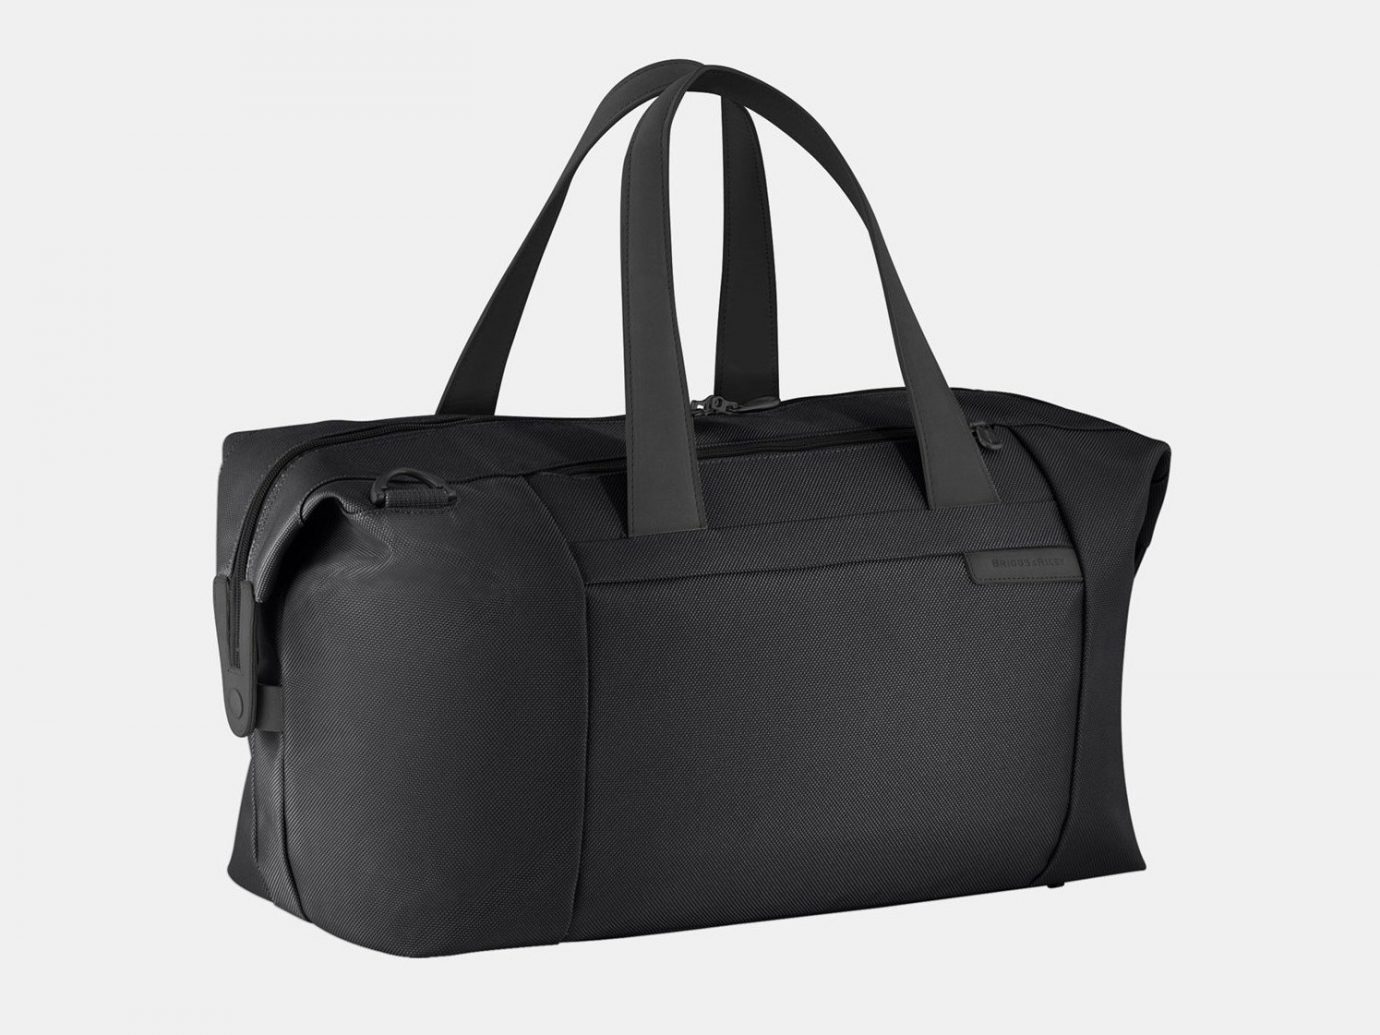 Style + Design bag black handbag product accessory basket shoulder bag leather hand luggage product design brand baggage luggage & bags